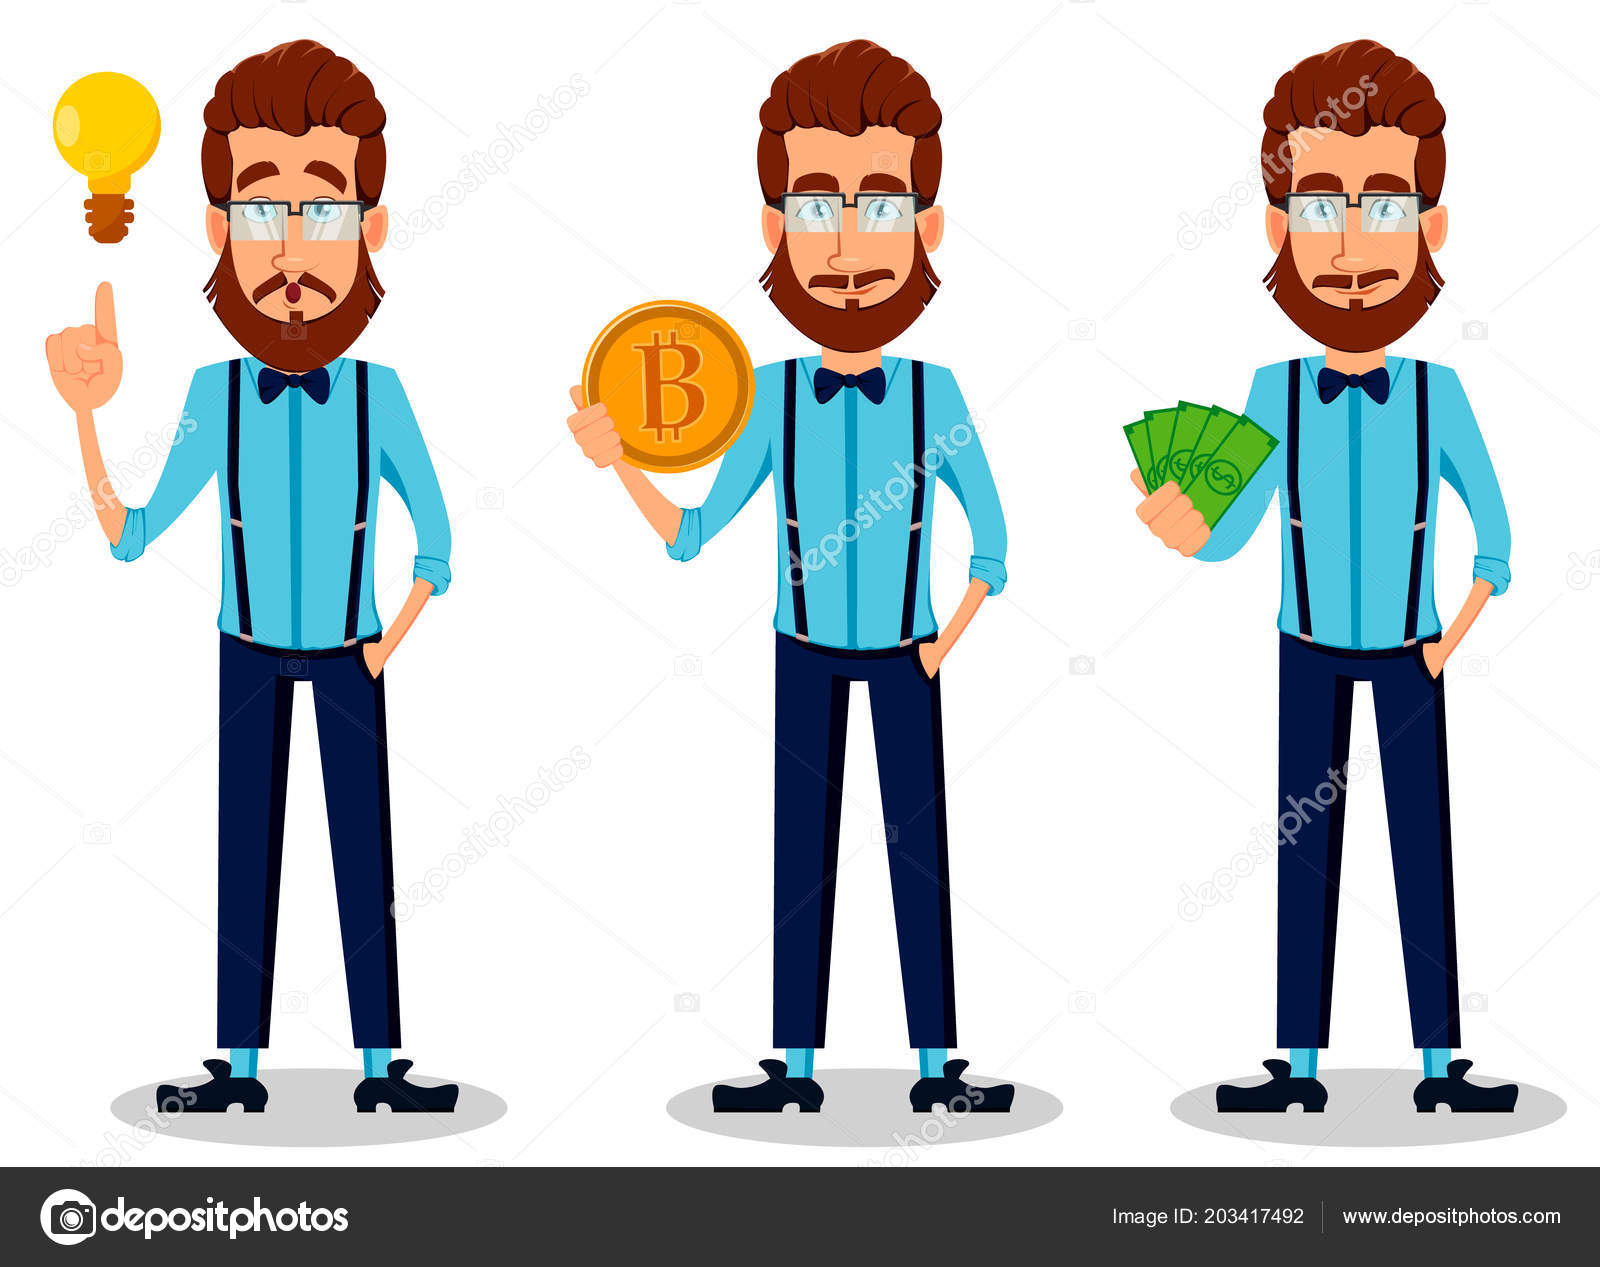 若い髭メガネ つのポーズの設定で流行に敏感な人 お金の良いアイデアを持つ Bitcoin を押し押しのハンサムな漫画のキャラクター ベクトル図 ストックベクター C Vectorkif